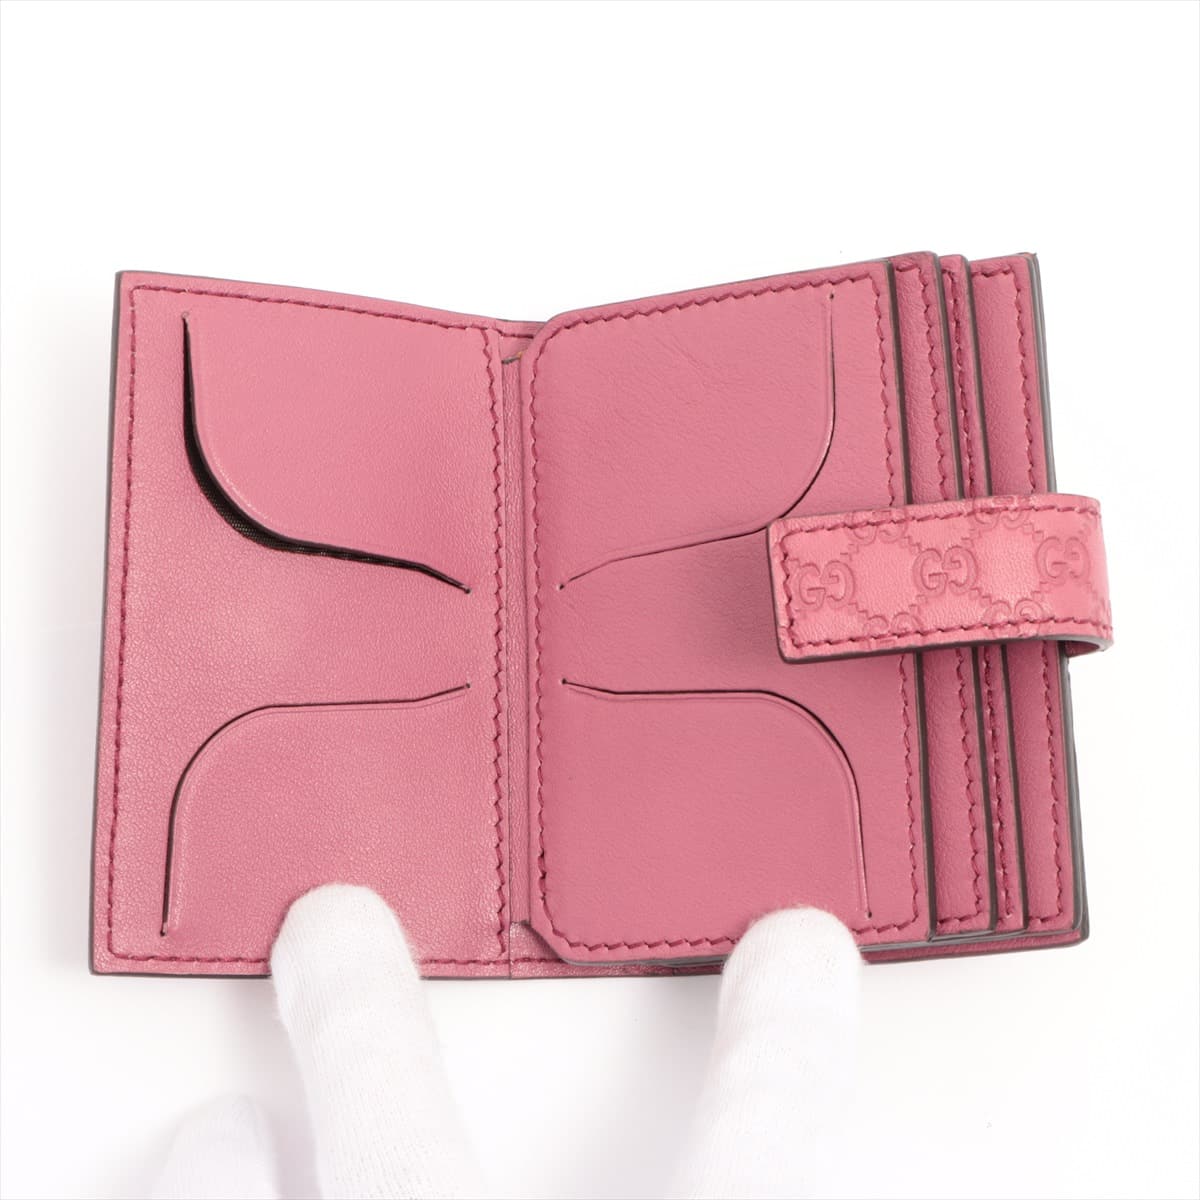 Gucci Micro Guccissima 309656 Leather Card case Purple